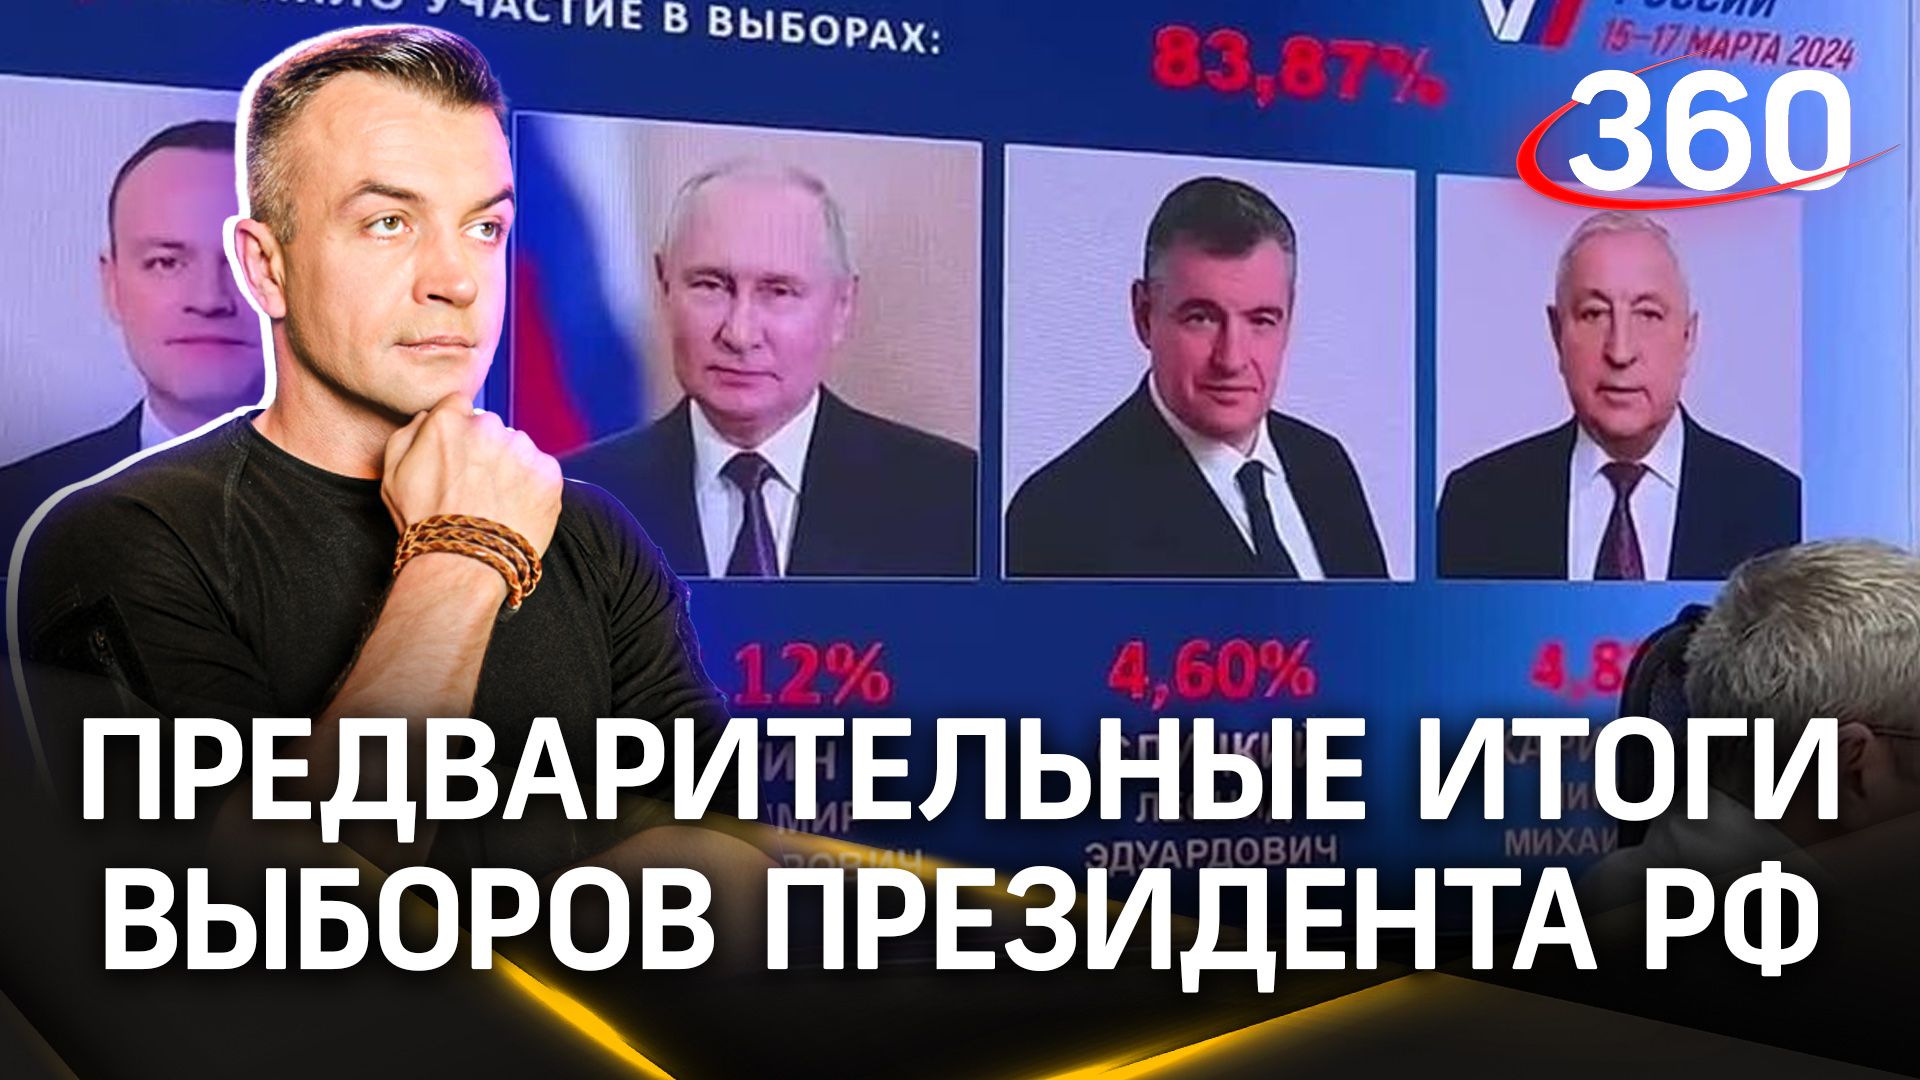 Предварительные итоги выборов подведут в штабе Путина в Донецке